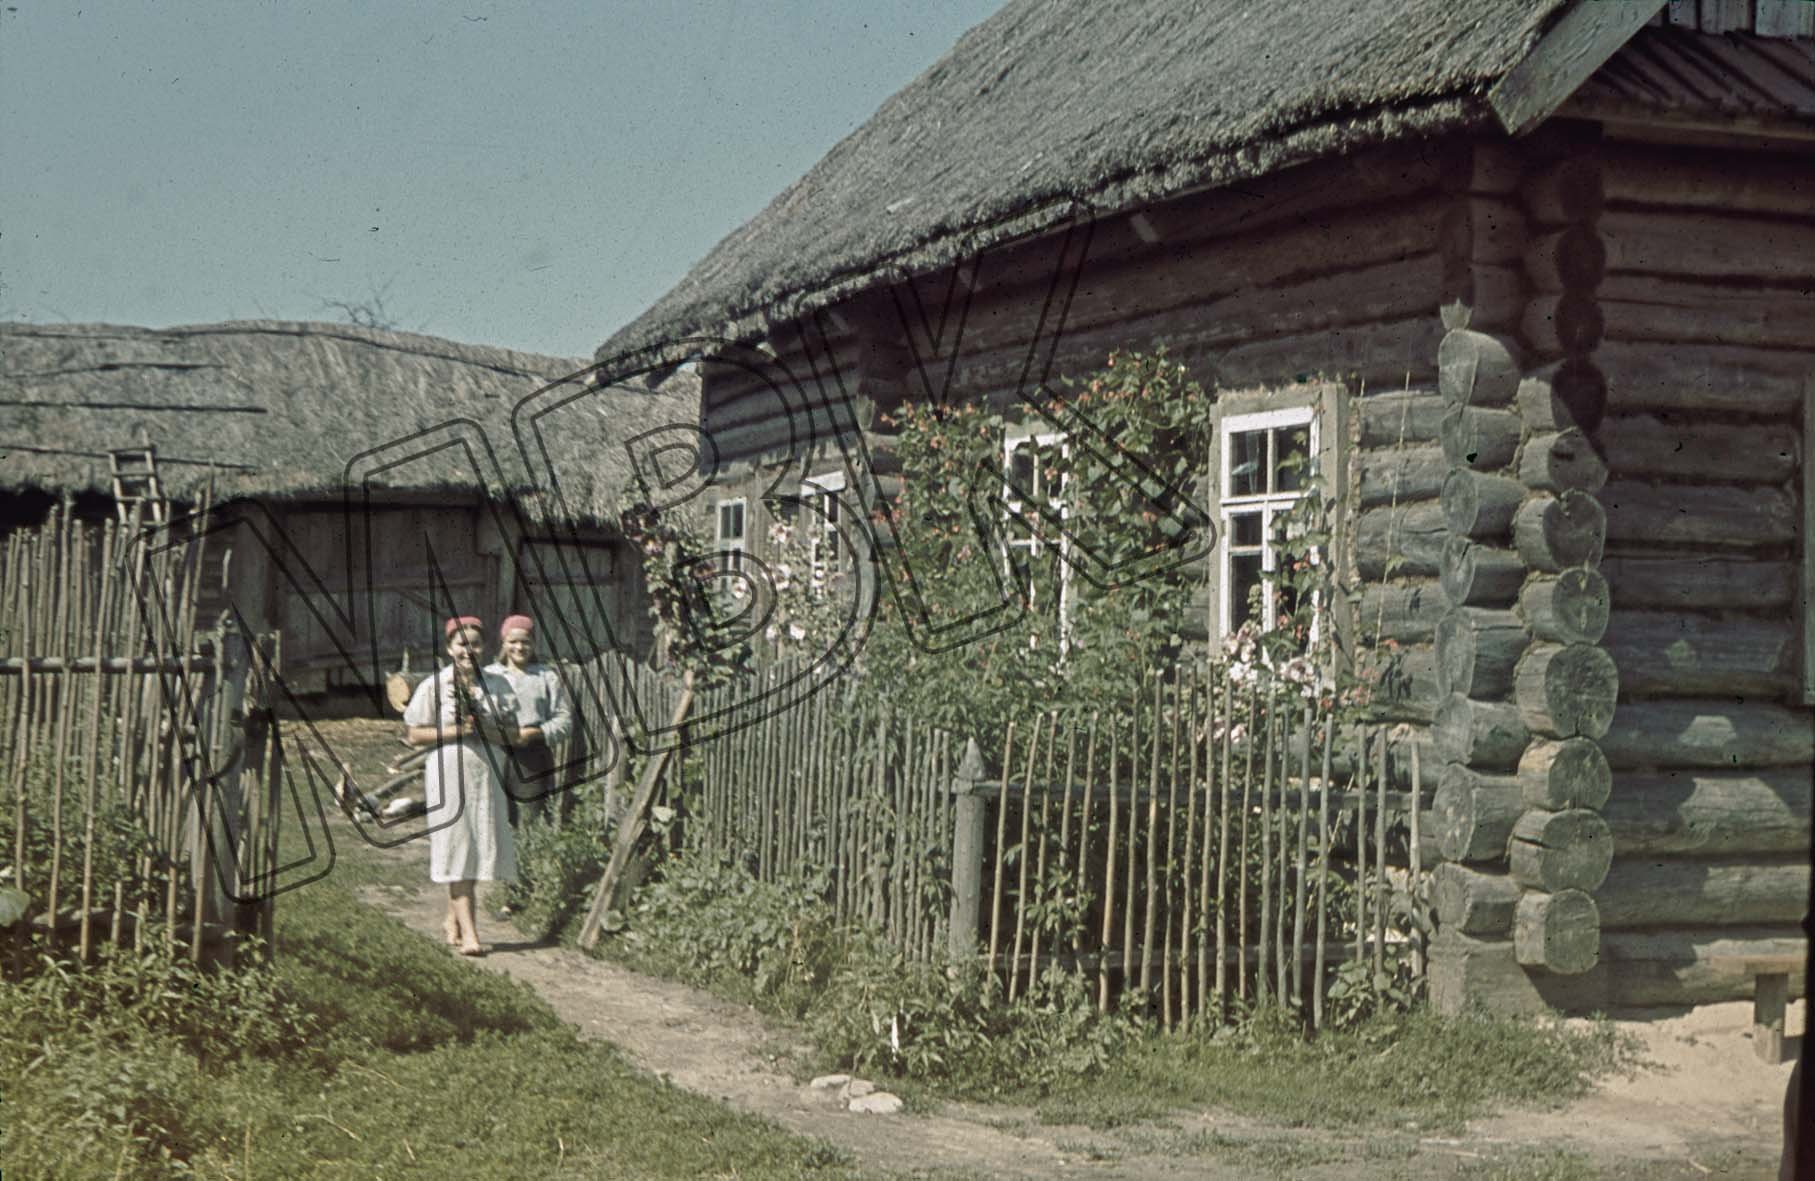 Fotografie: Frauen auf einem Bauernhof, bei Orscha, August 1941 (Museum Berlin-Karlshorst RR-P)